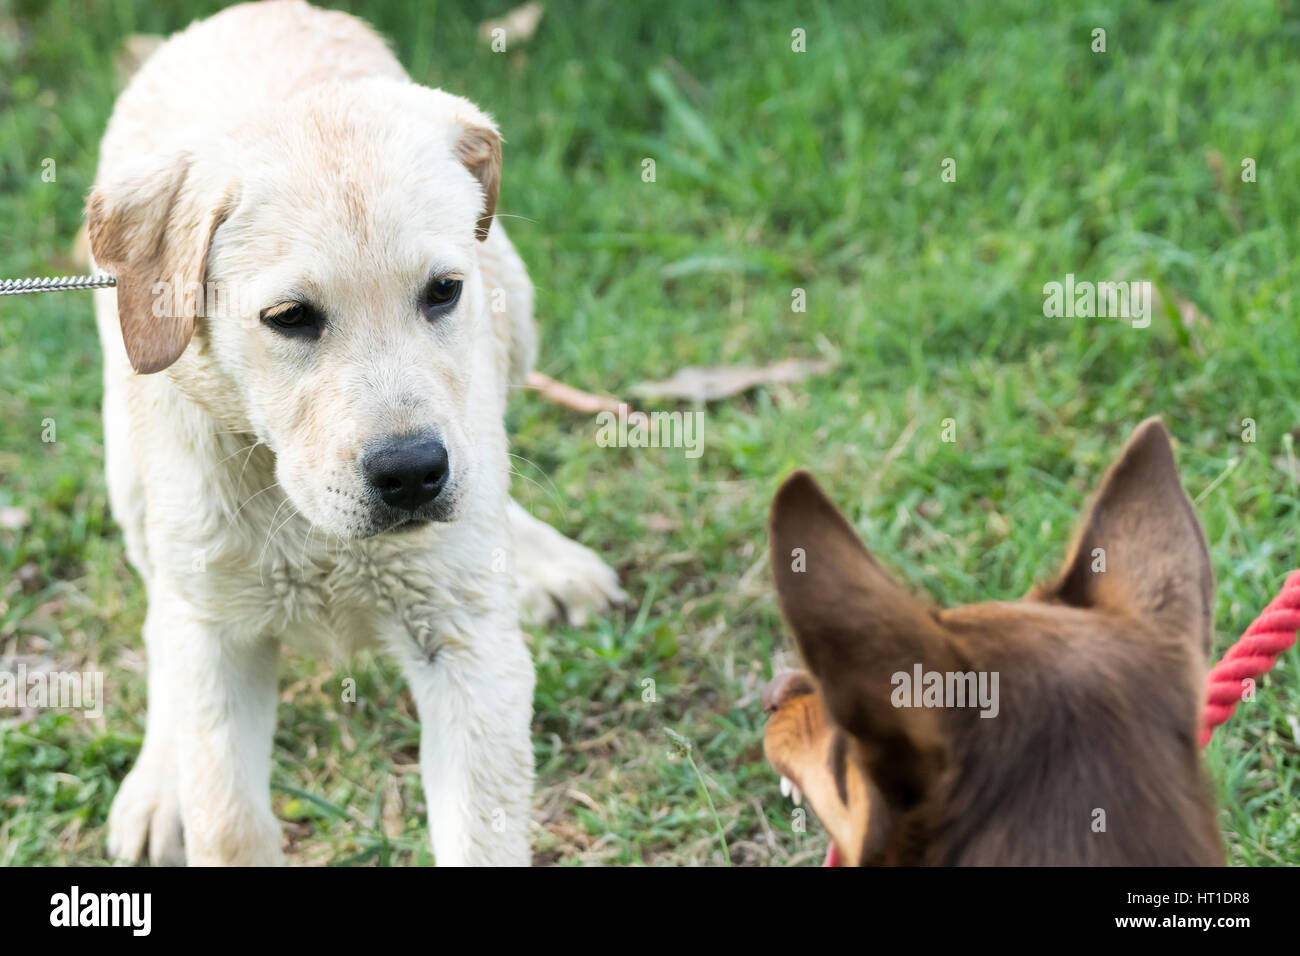 Un Kelpie chien grogne et découvre ses dents à un Labrador Retriever chiot, qui semble effrayé. Banque D'Images